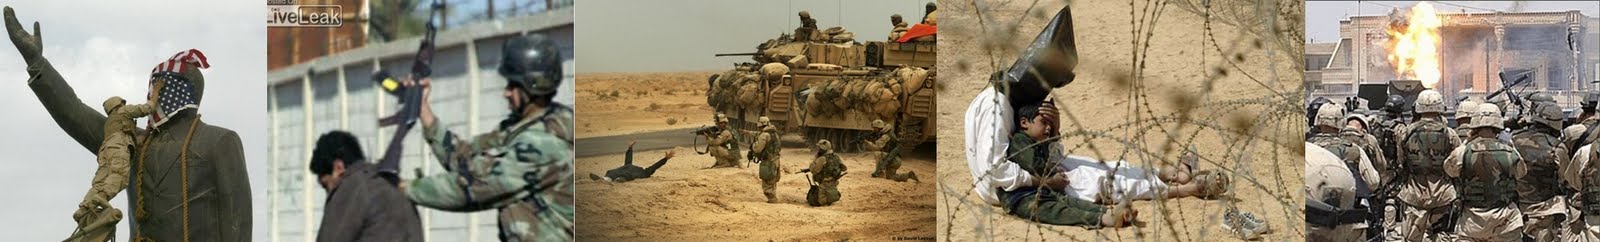 Invasão dos Estados Unidos no Iraque